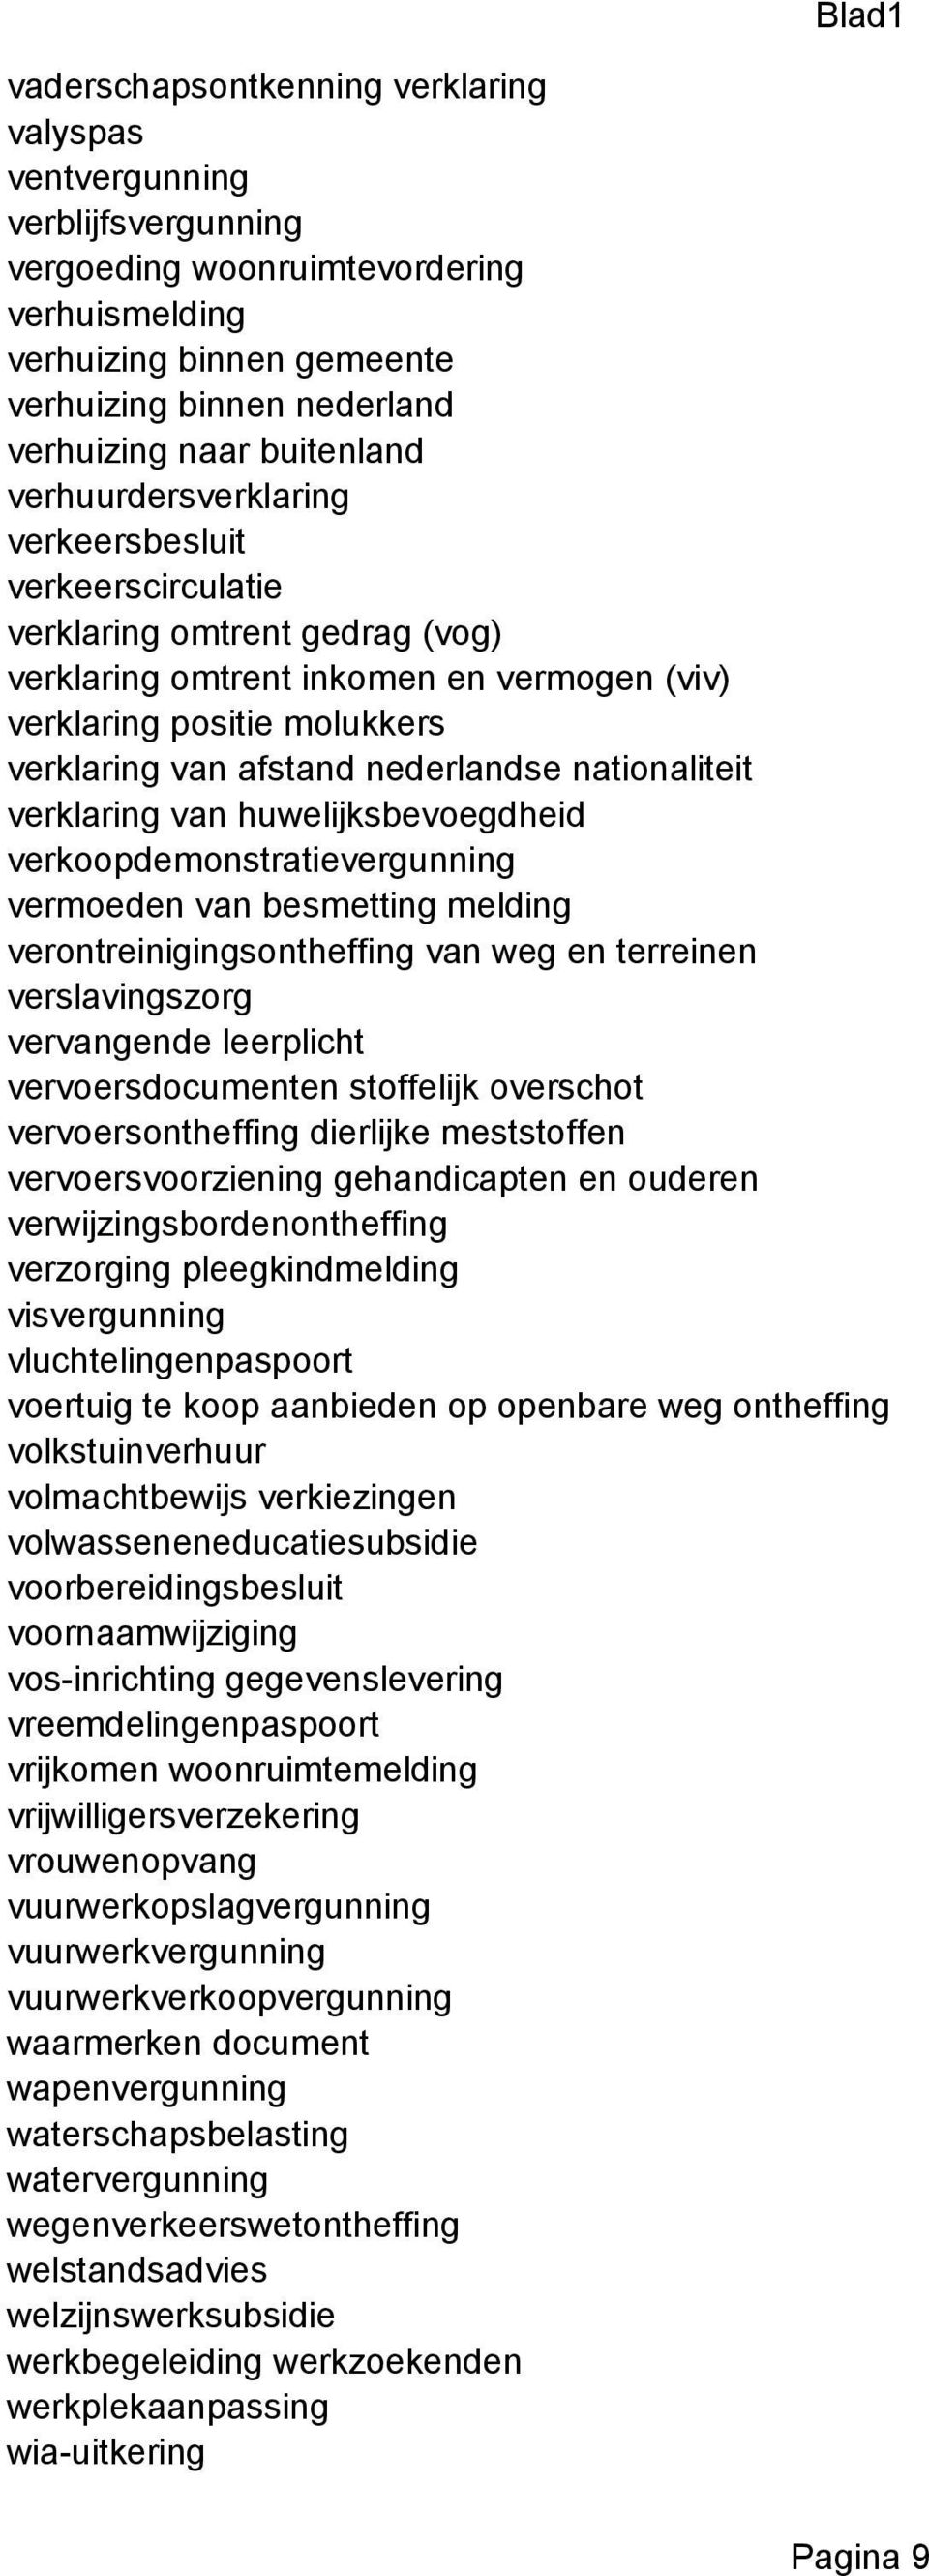 nederlandse nationaliteit verklaring van huwelijksbevoegdheid verkoopdemonstratievergunning vermoeden van besmetting melding verontreinigingsontheffing van weg en terreinen verslavingszorg